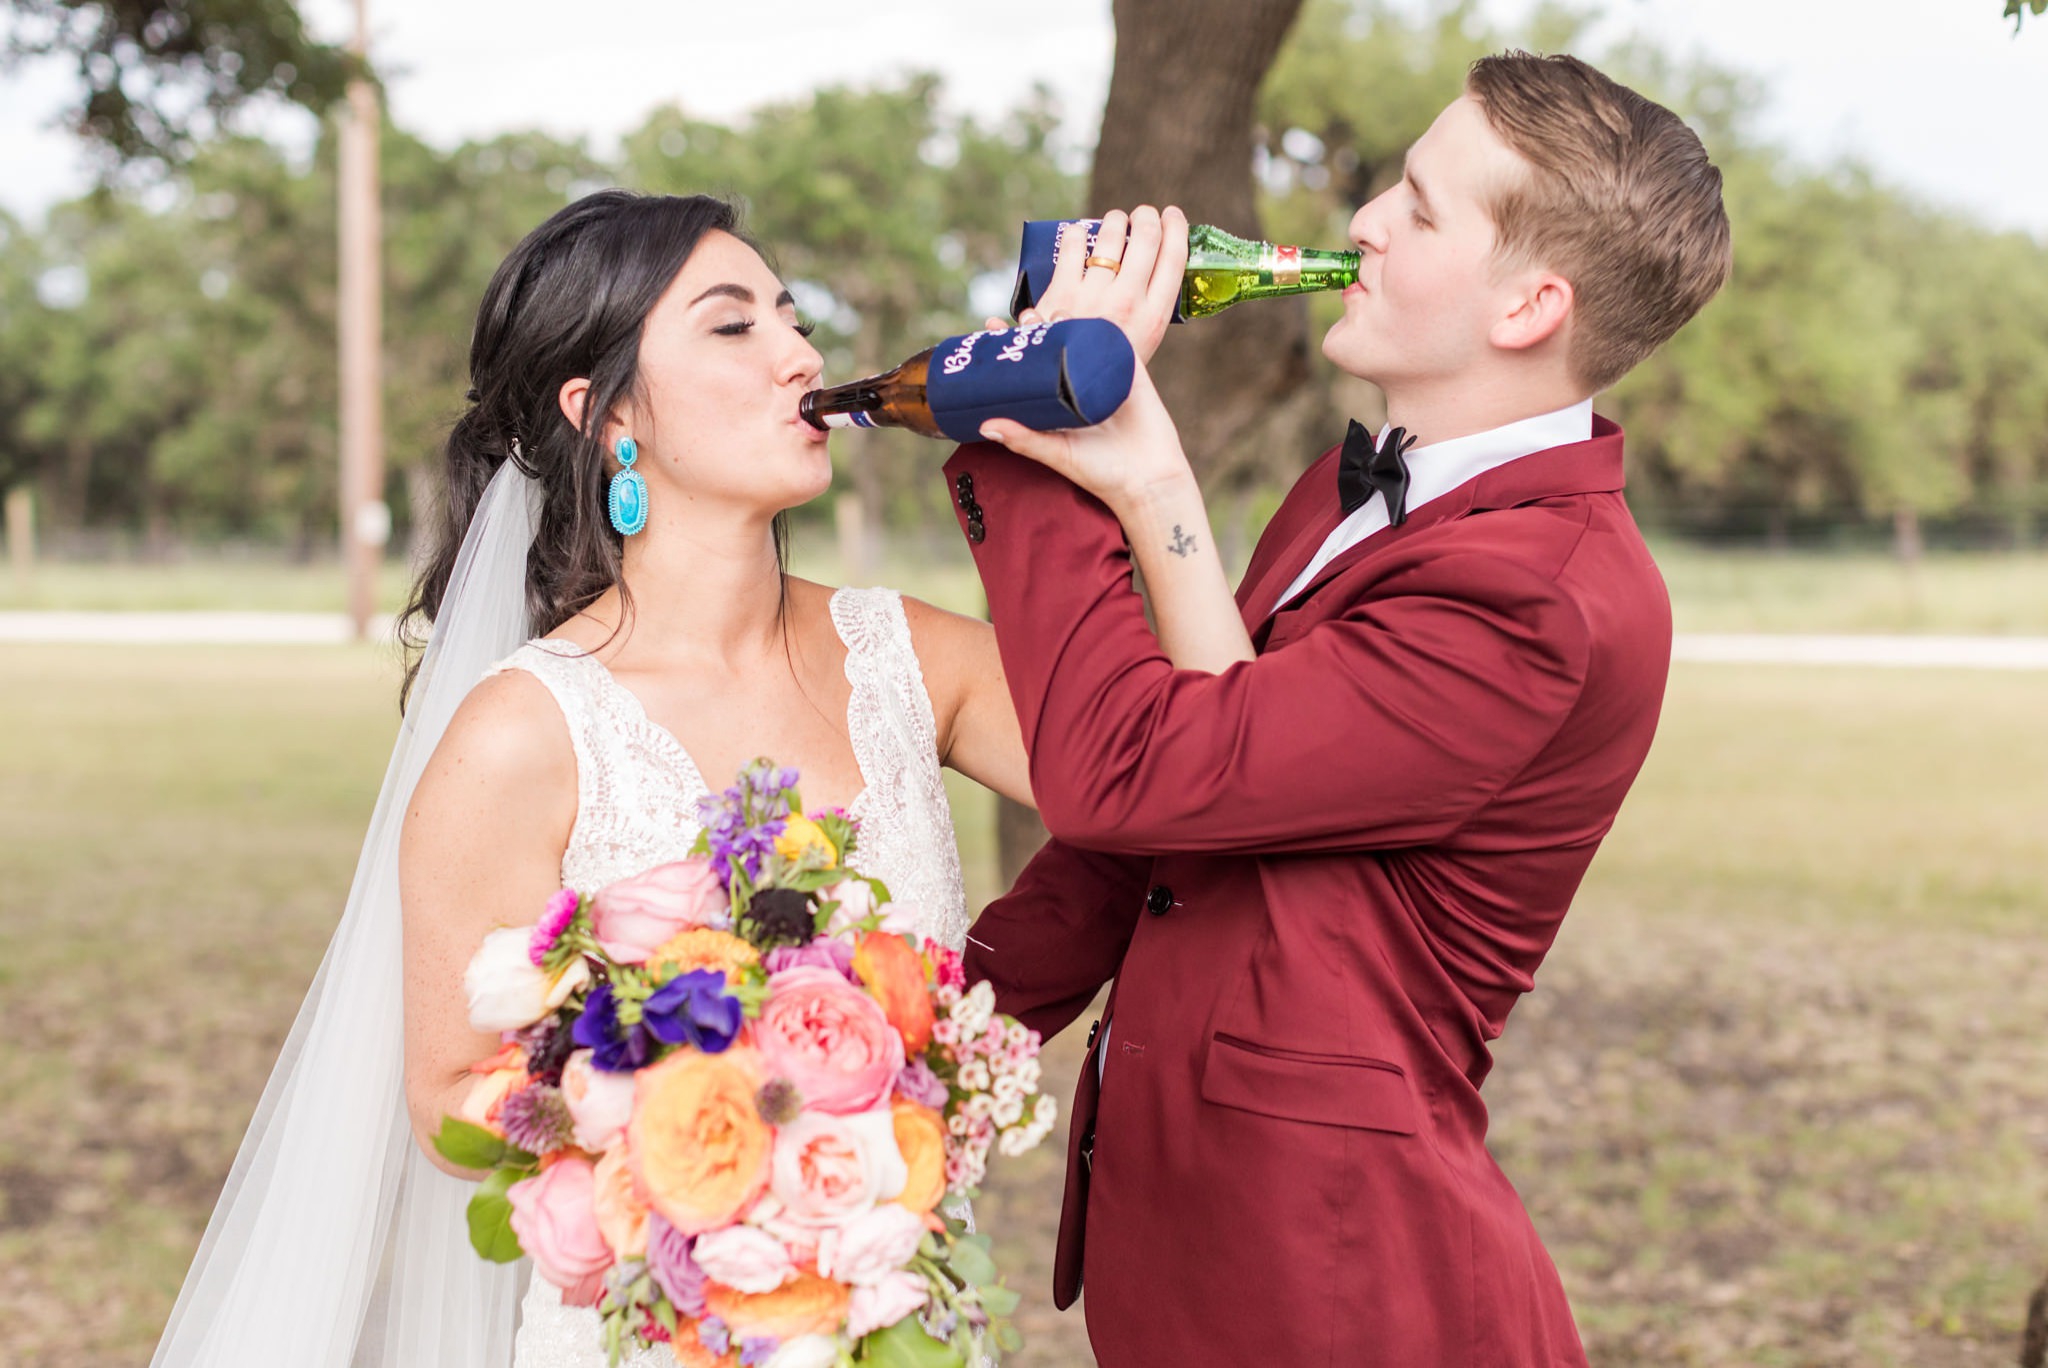 A Vibrant & Colorful Summer Wedding at Rockin' B Ranch in Boerne, TX by Dawn Elizabeth Studios, San Antonio Wedding Photographer